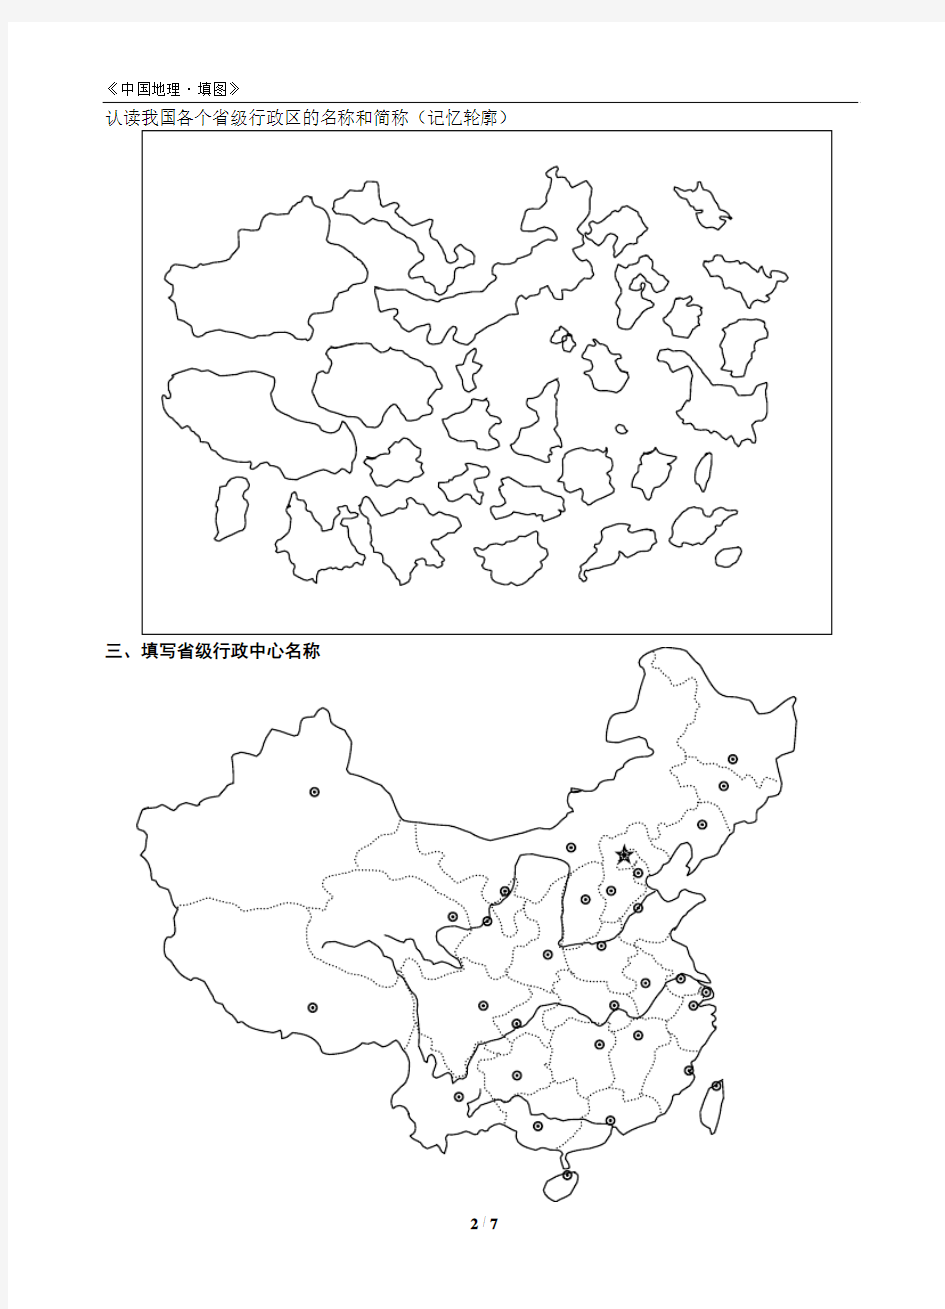 中国地理填图集(好)